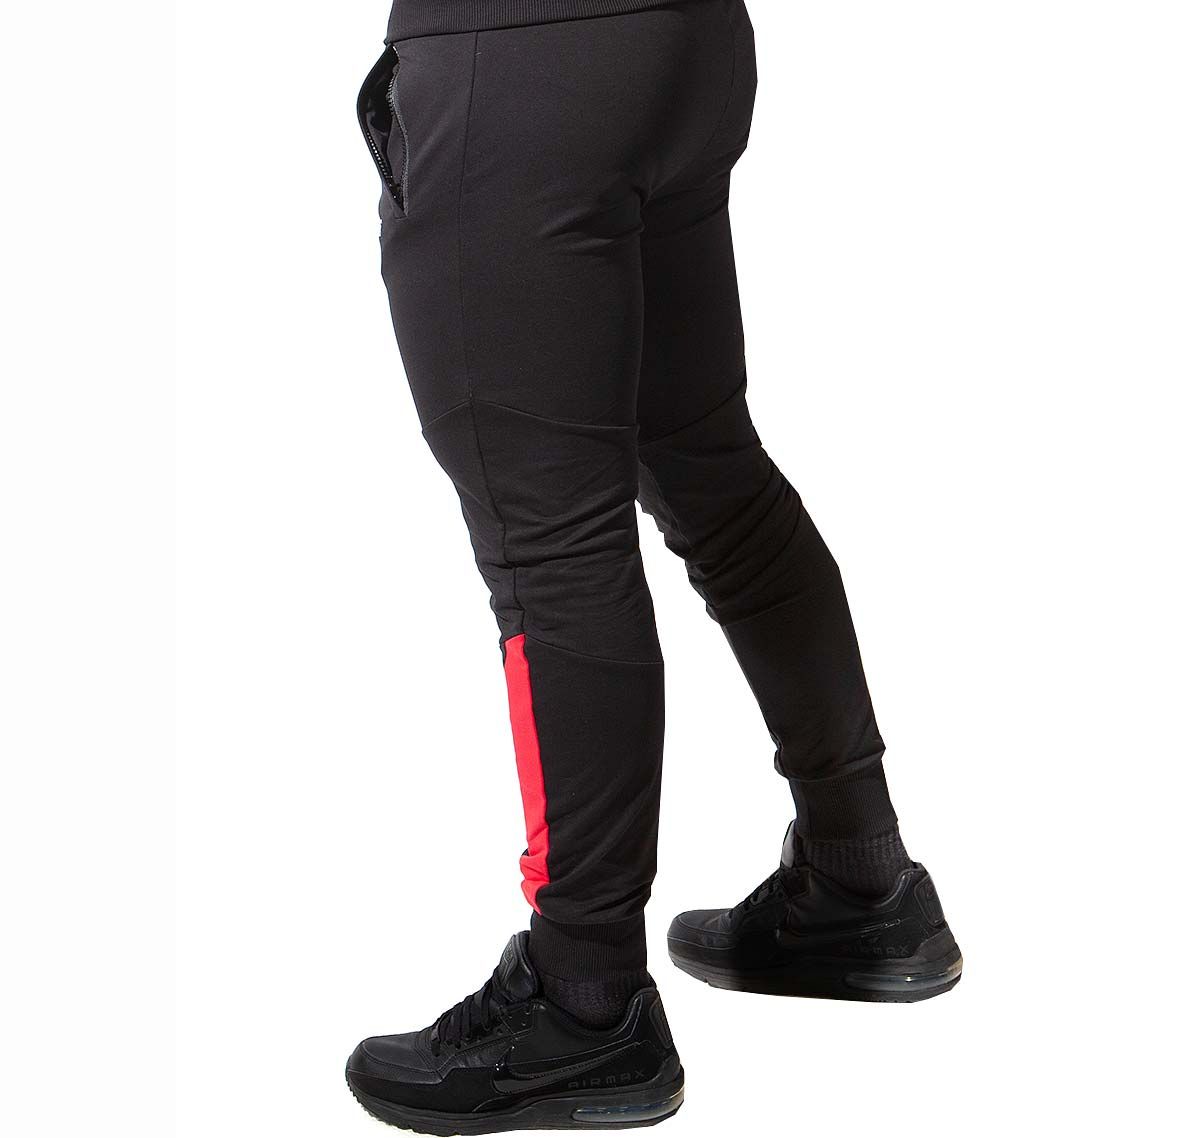 Alexander COBB lange Sporthose PANTS BLACK RED, schwarz